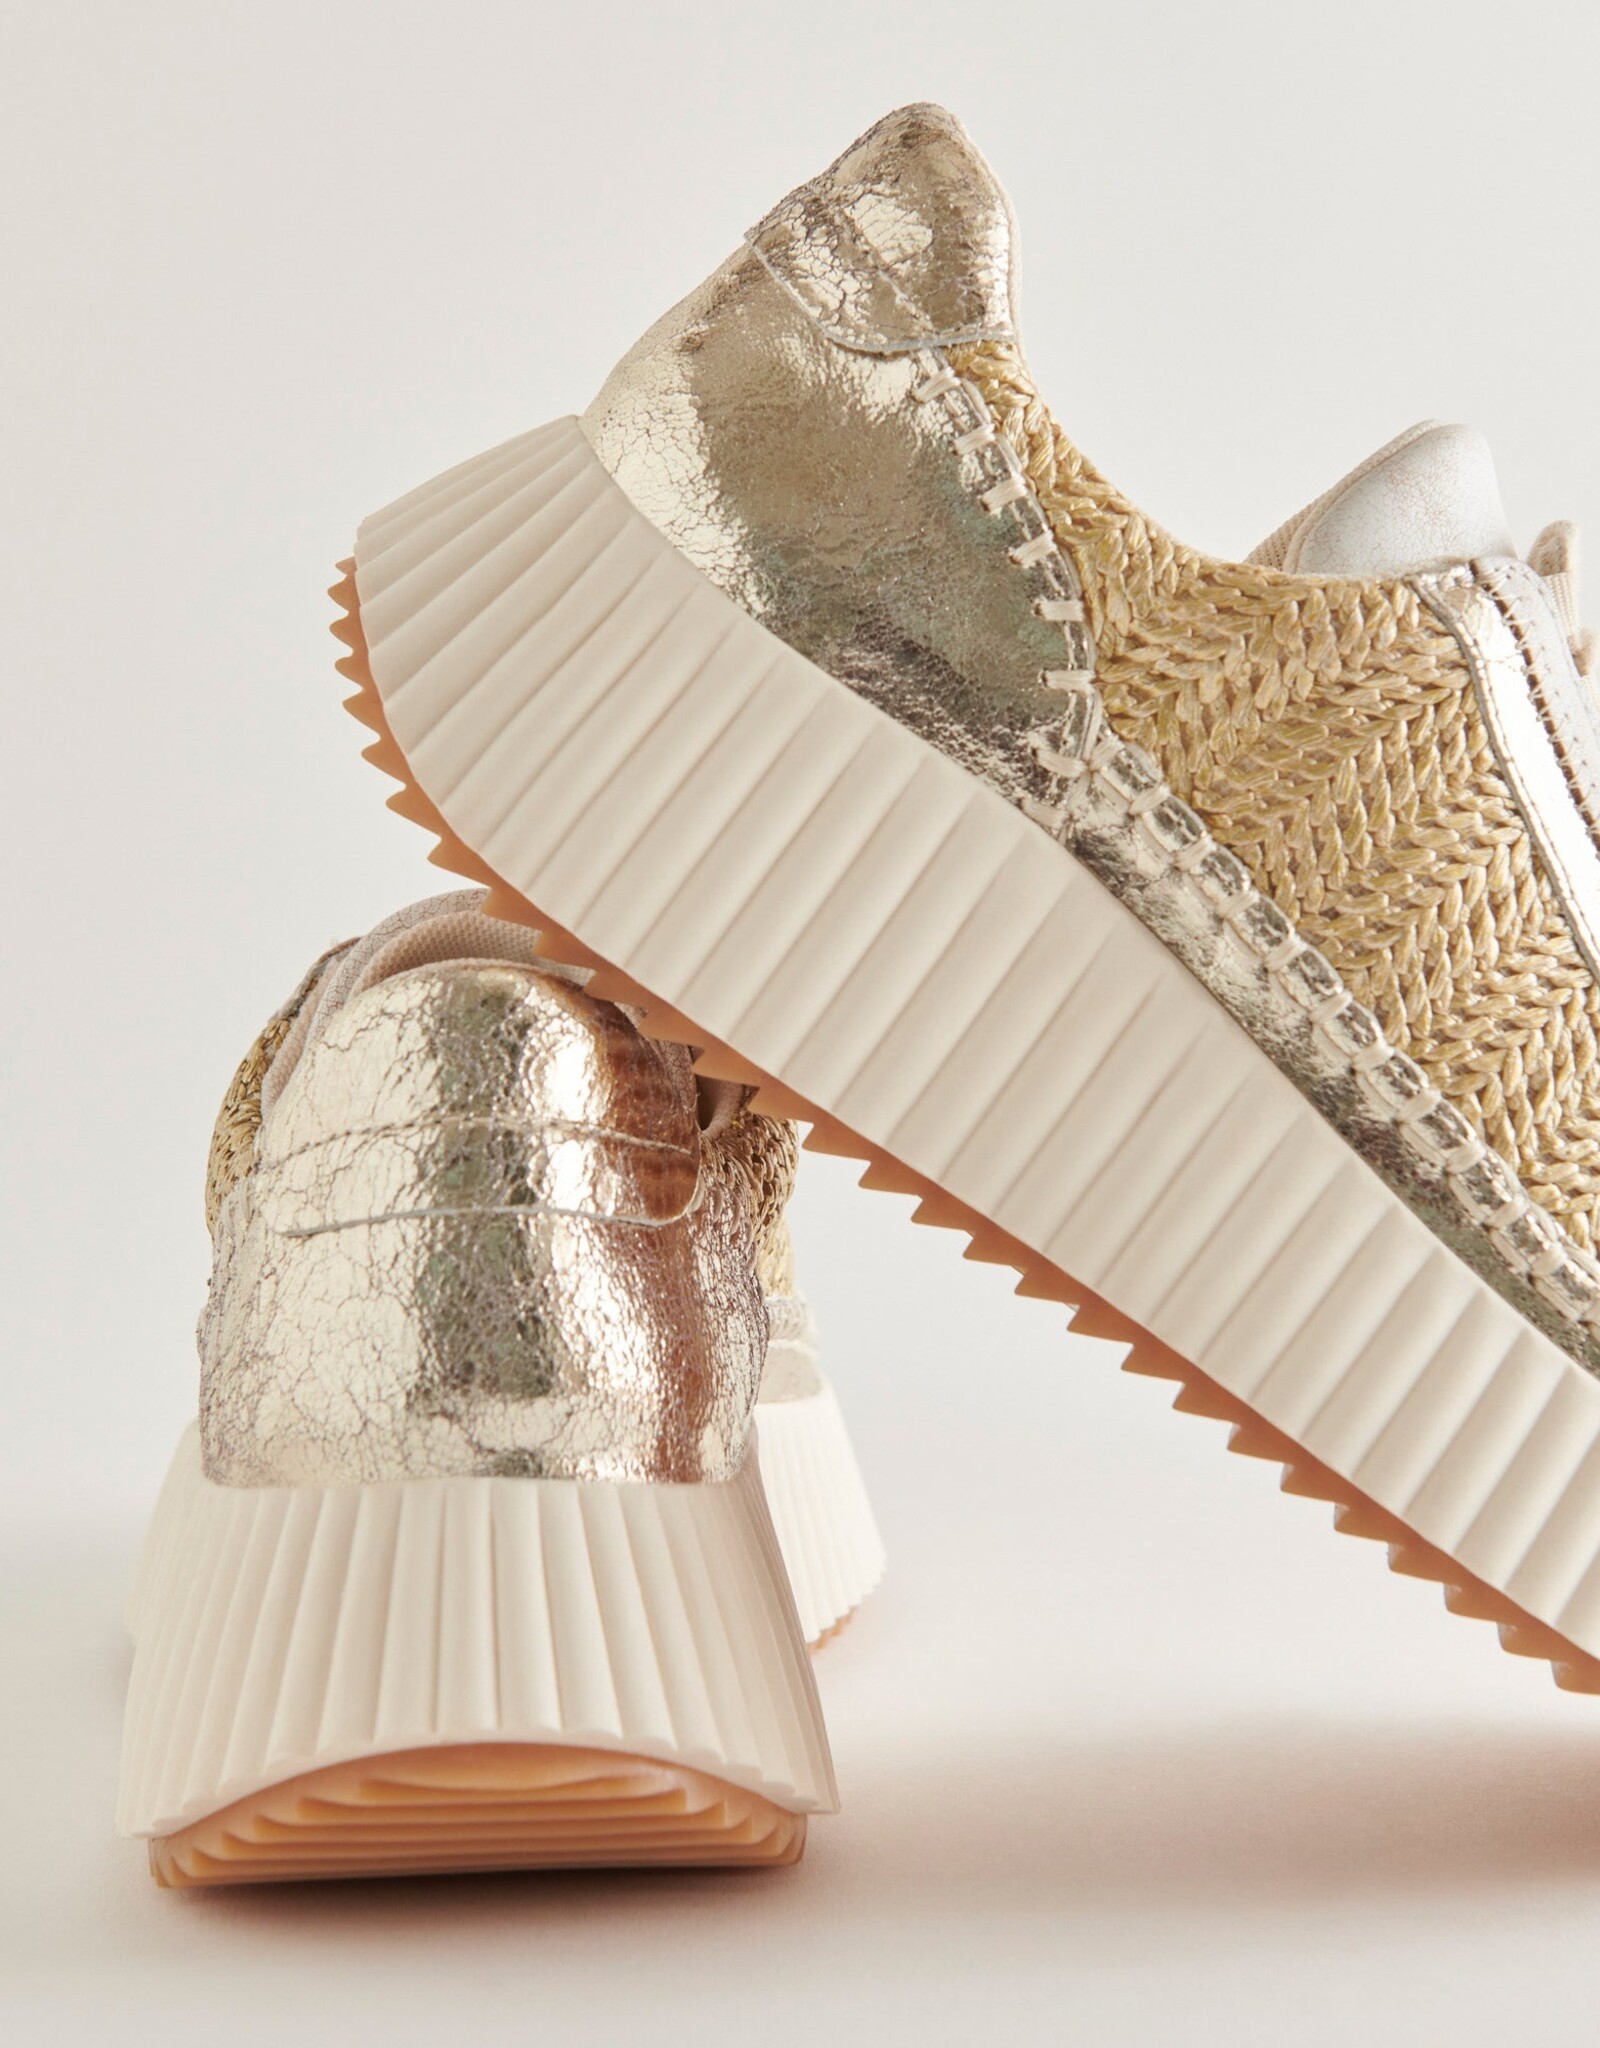 Dolen Gold Knit Sneaker